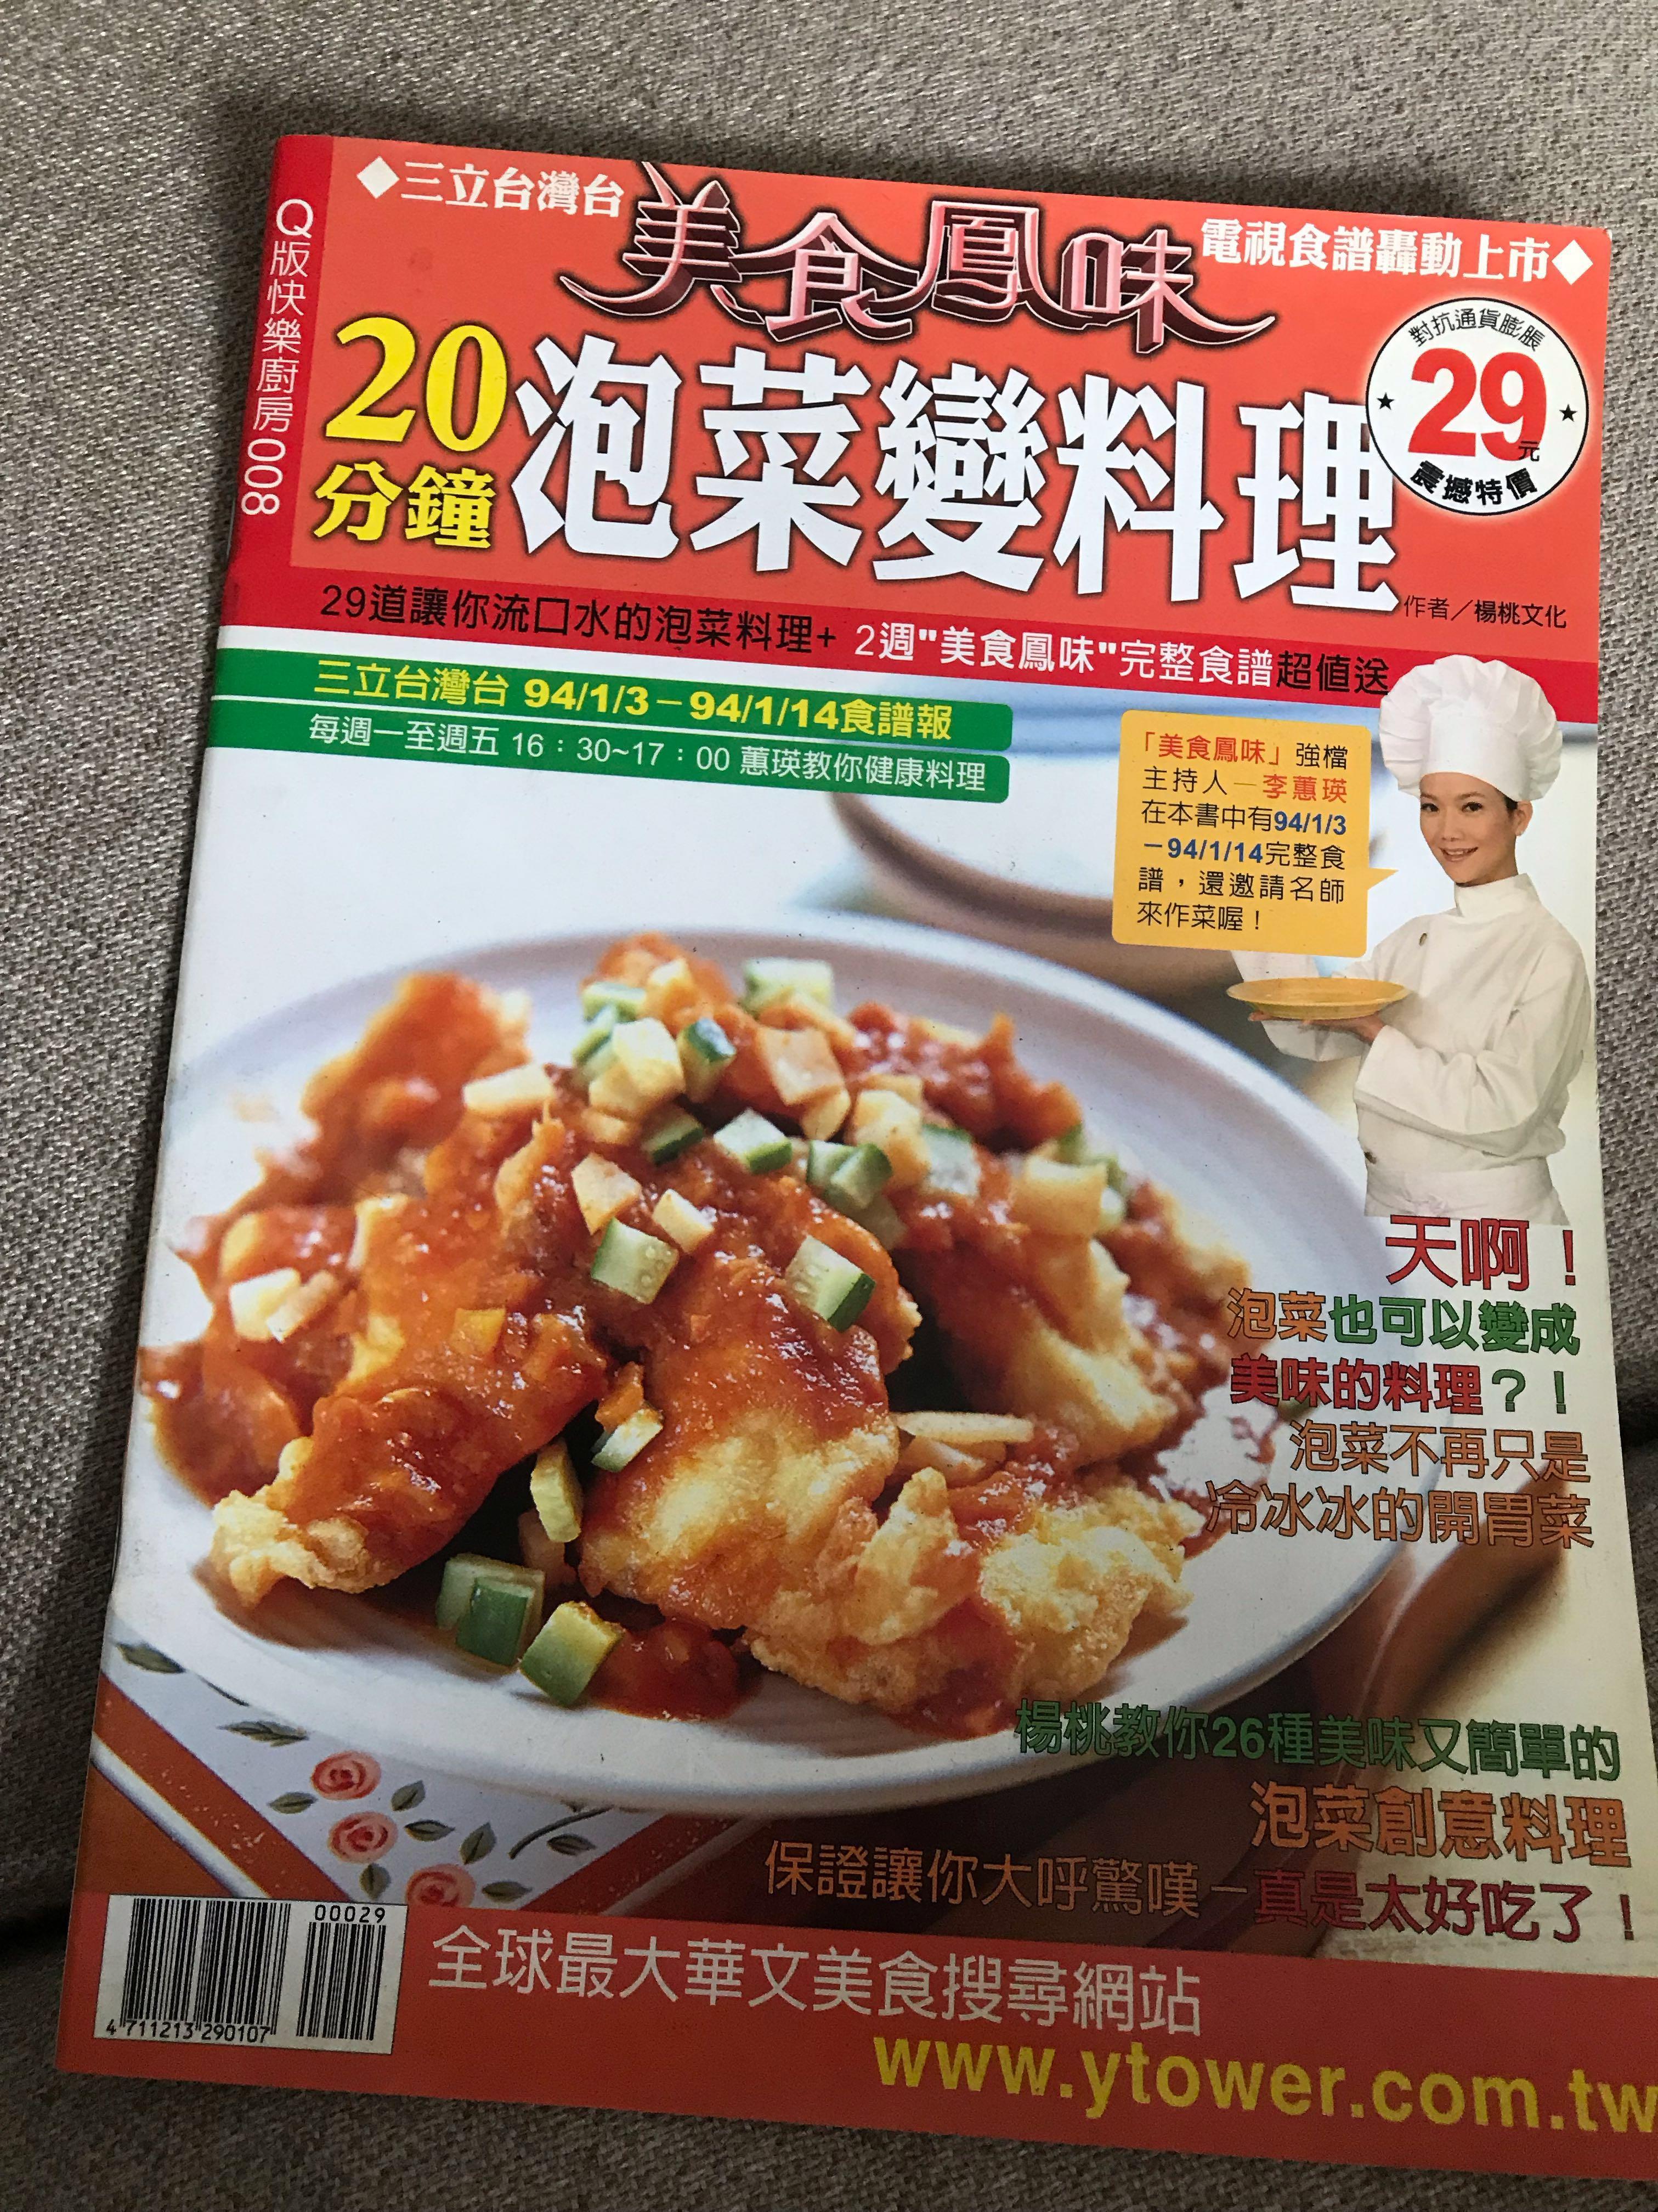 分钟泡菜变料理食谱 Kimchi Dishes In minutes Cookbook Recipe Books Stationery Non Fiction On Carousell